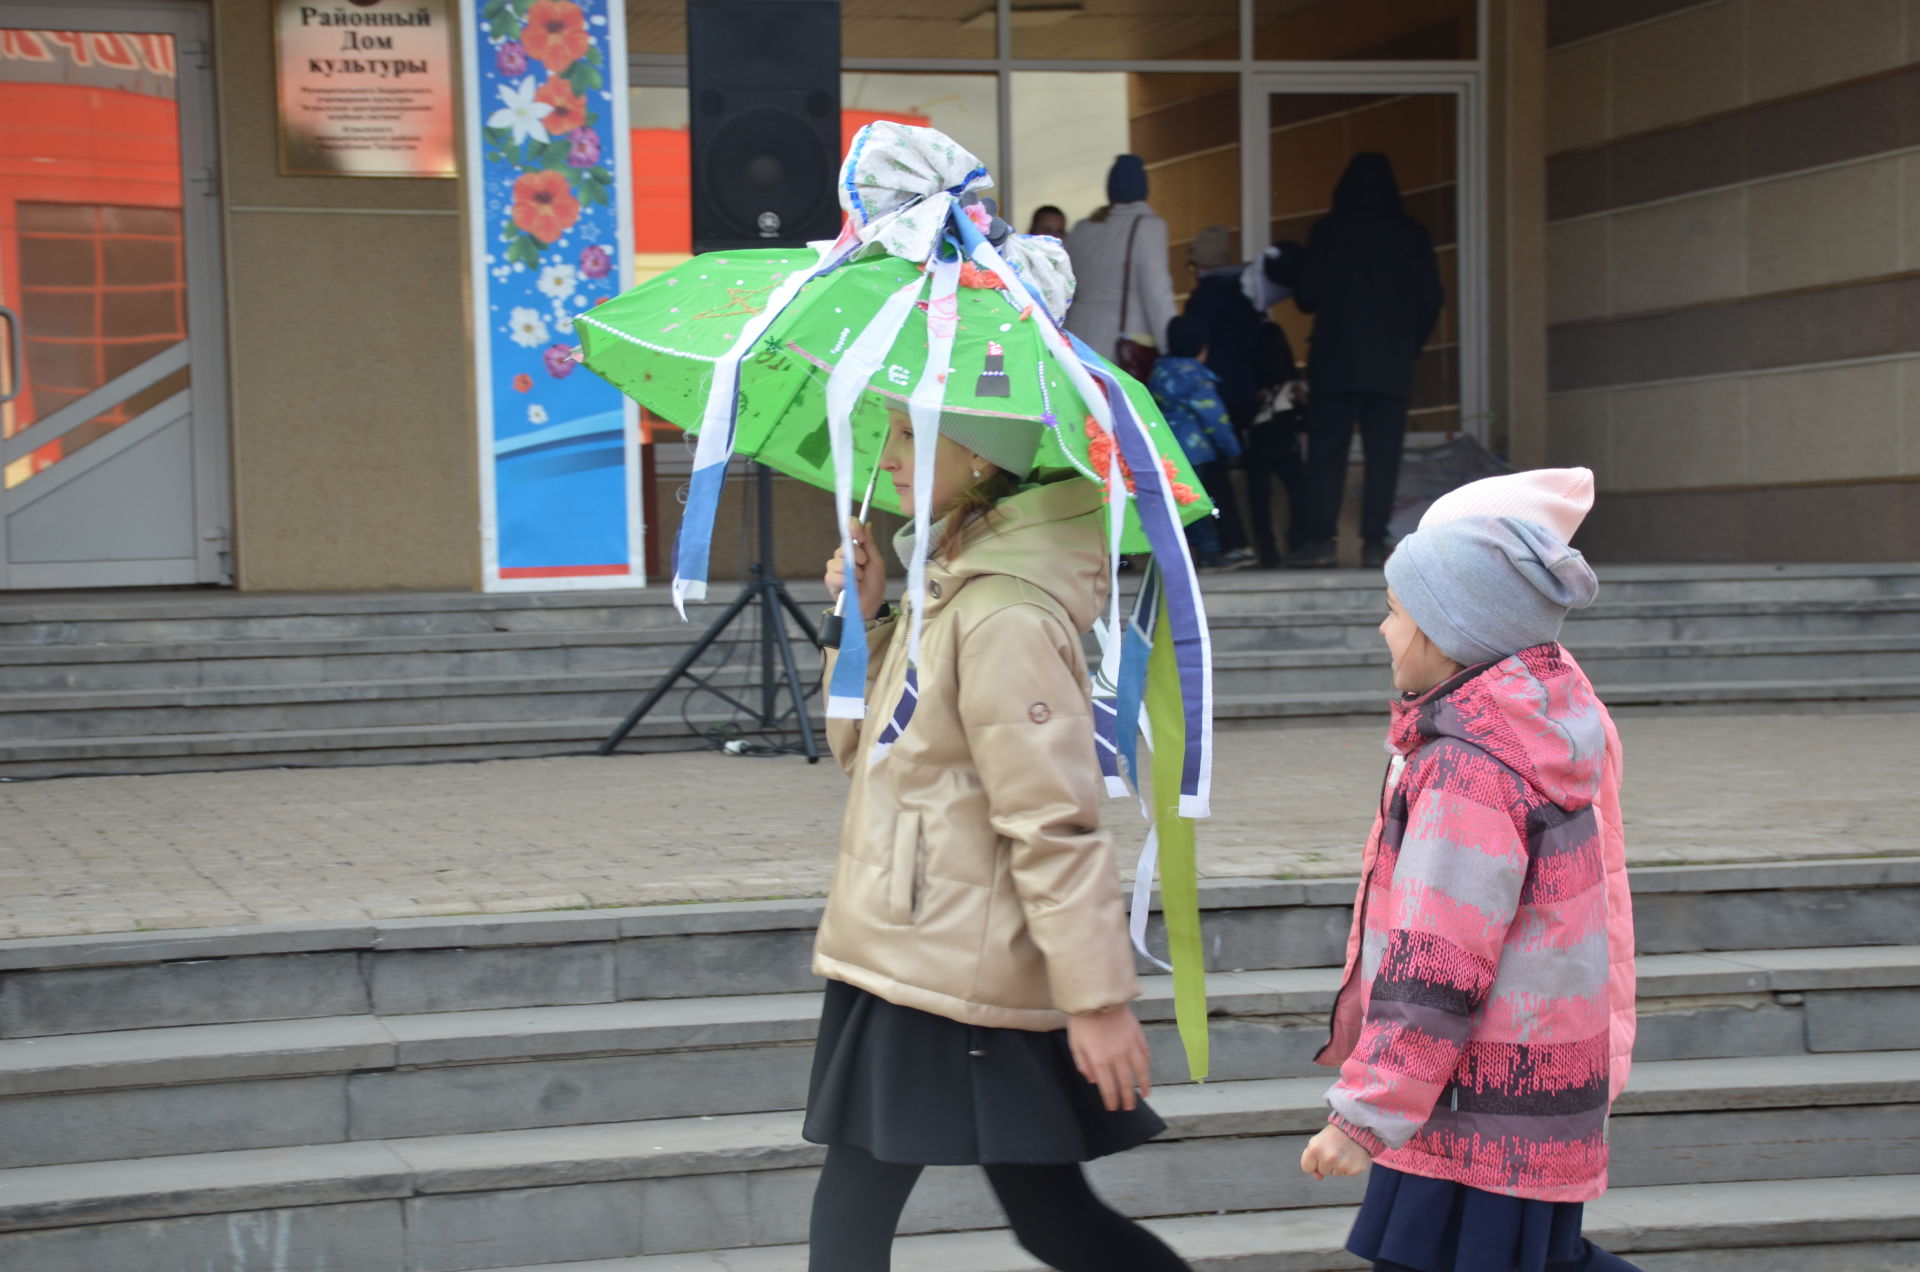 "Парад зонтов" - 2021